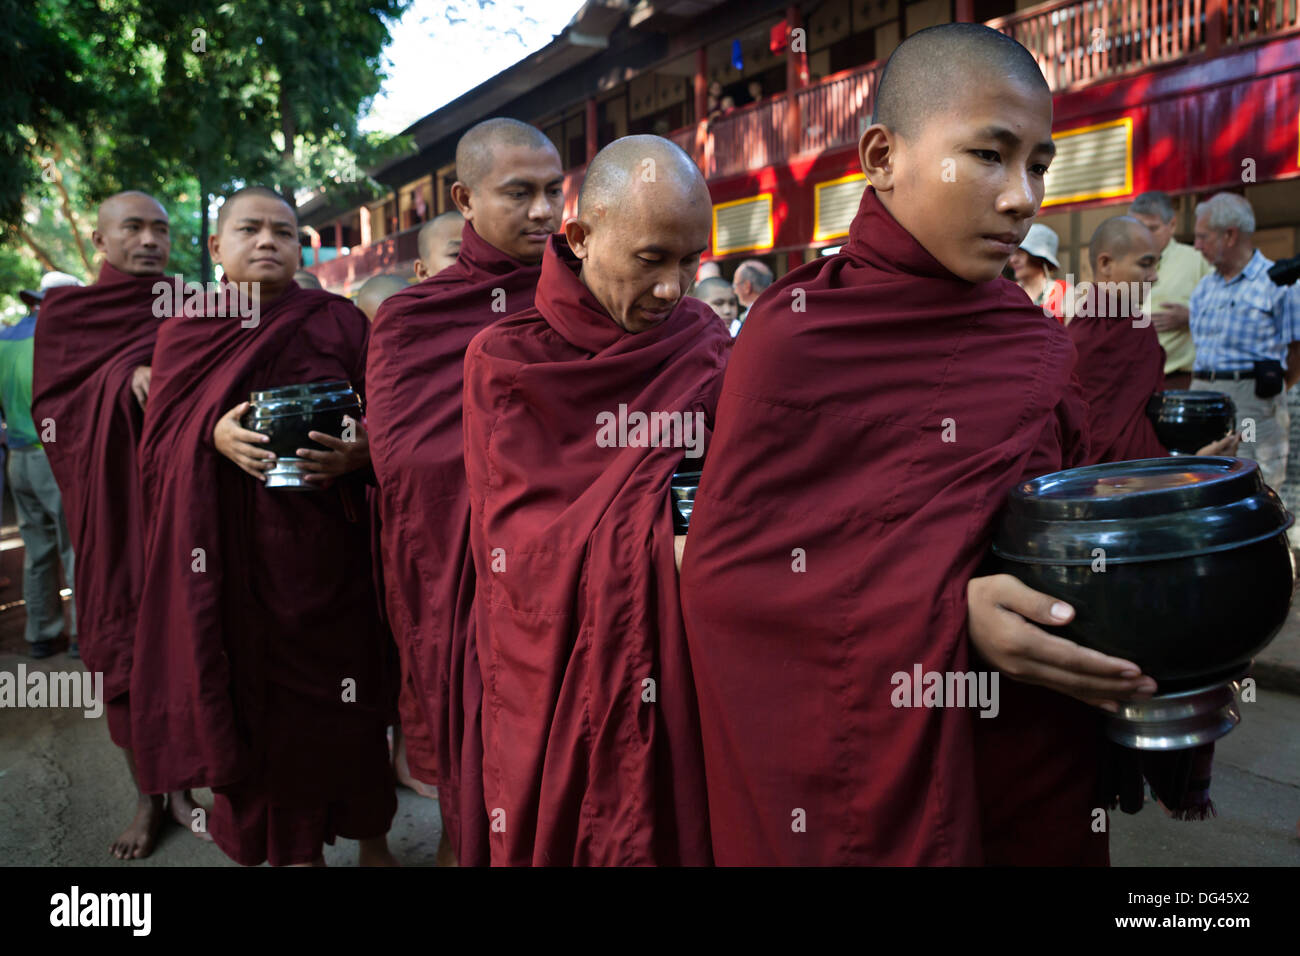 Les moines bouddhistes, la queue pour recevoir des dons de riz pour le déjeuner, Mahar Gandar Yoné Monastère, Mandalay, Myanmar (Birmanie), l'Asie Banque D'Images